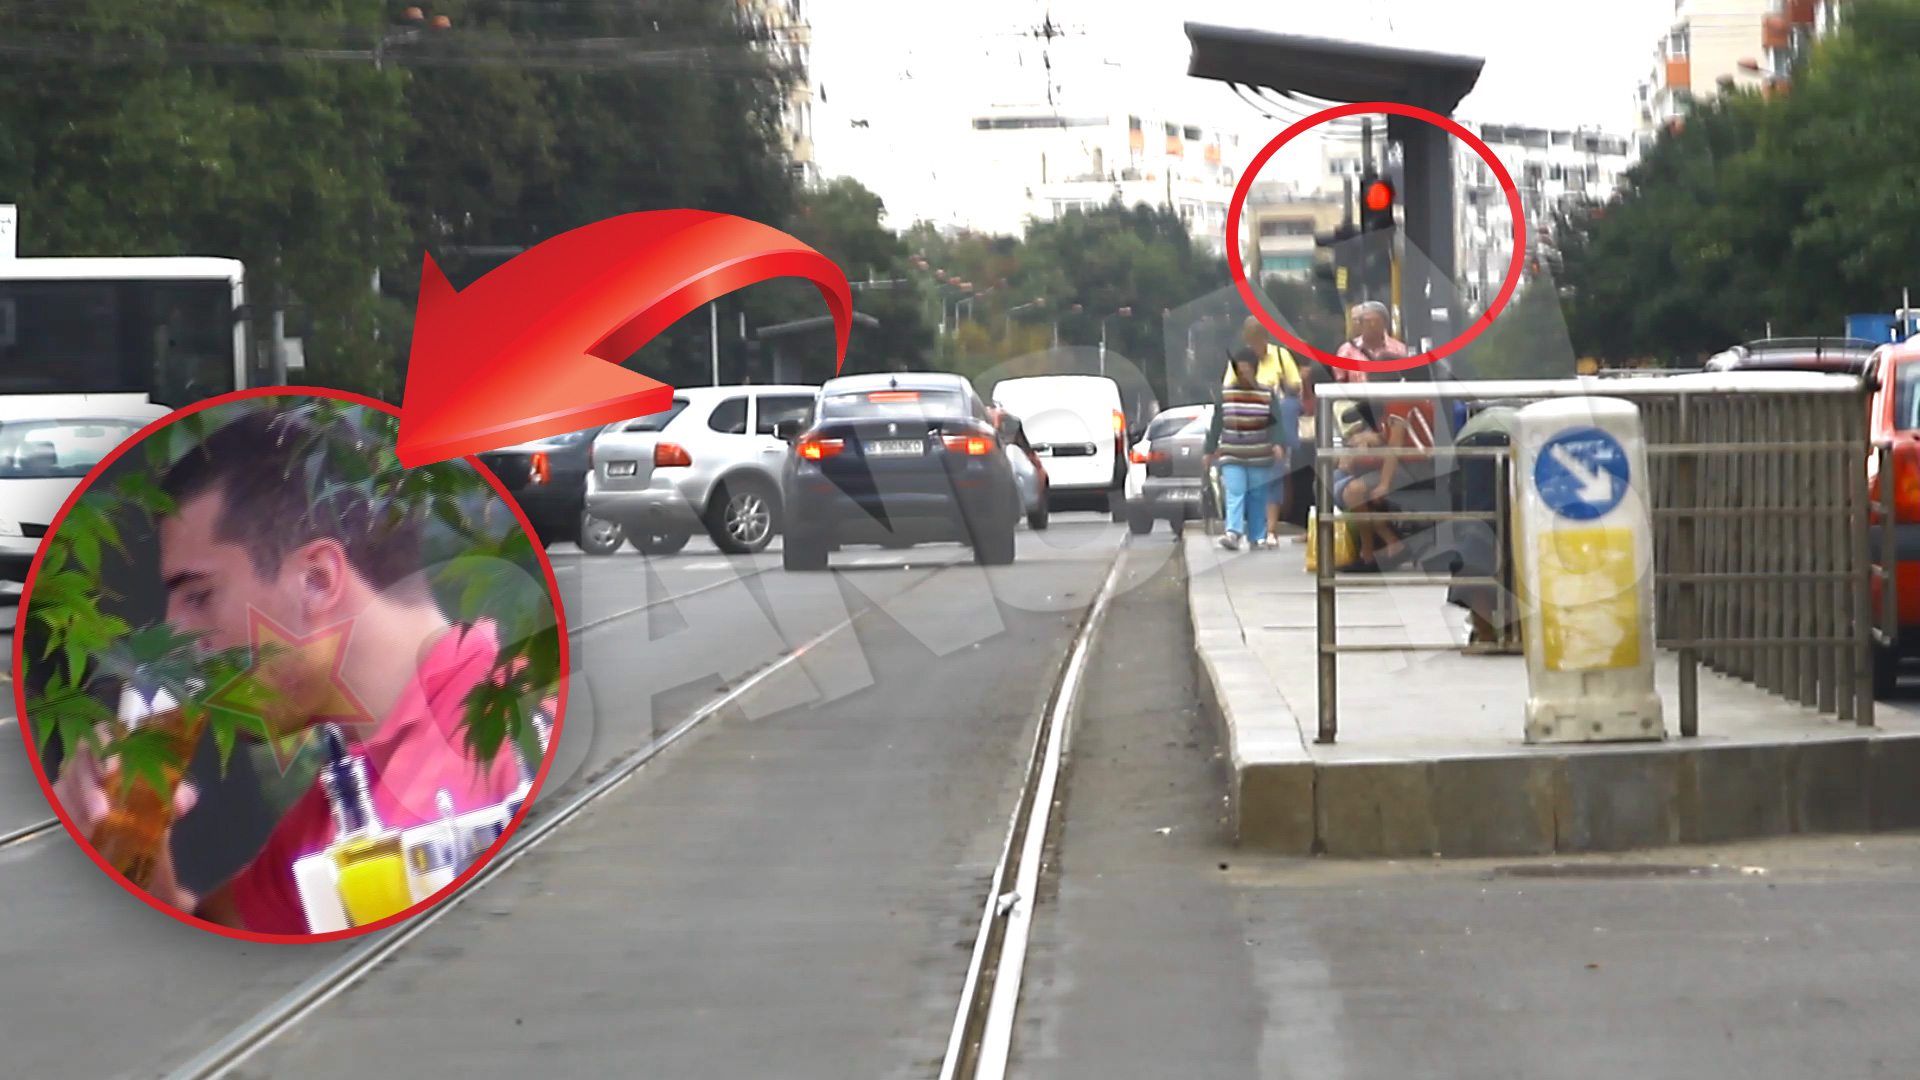 Nu numai ca s-a urcat baut la volan, dar Nikolic a trecut pe linia de tramvai, a depasit refugiul si a trecut pe culoarea rosie a semaforului